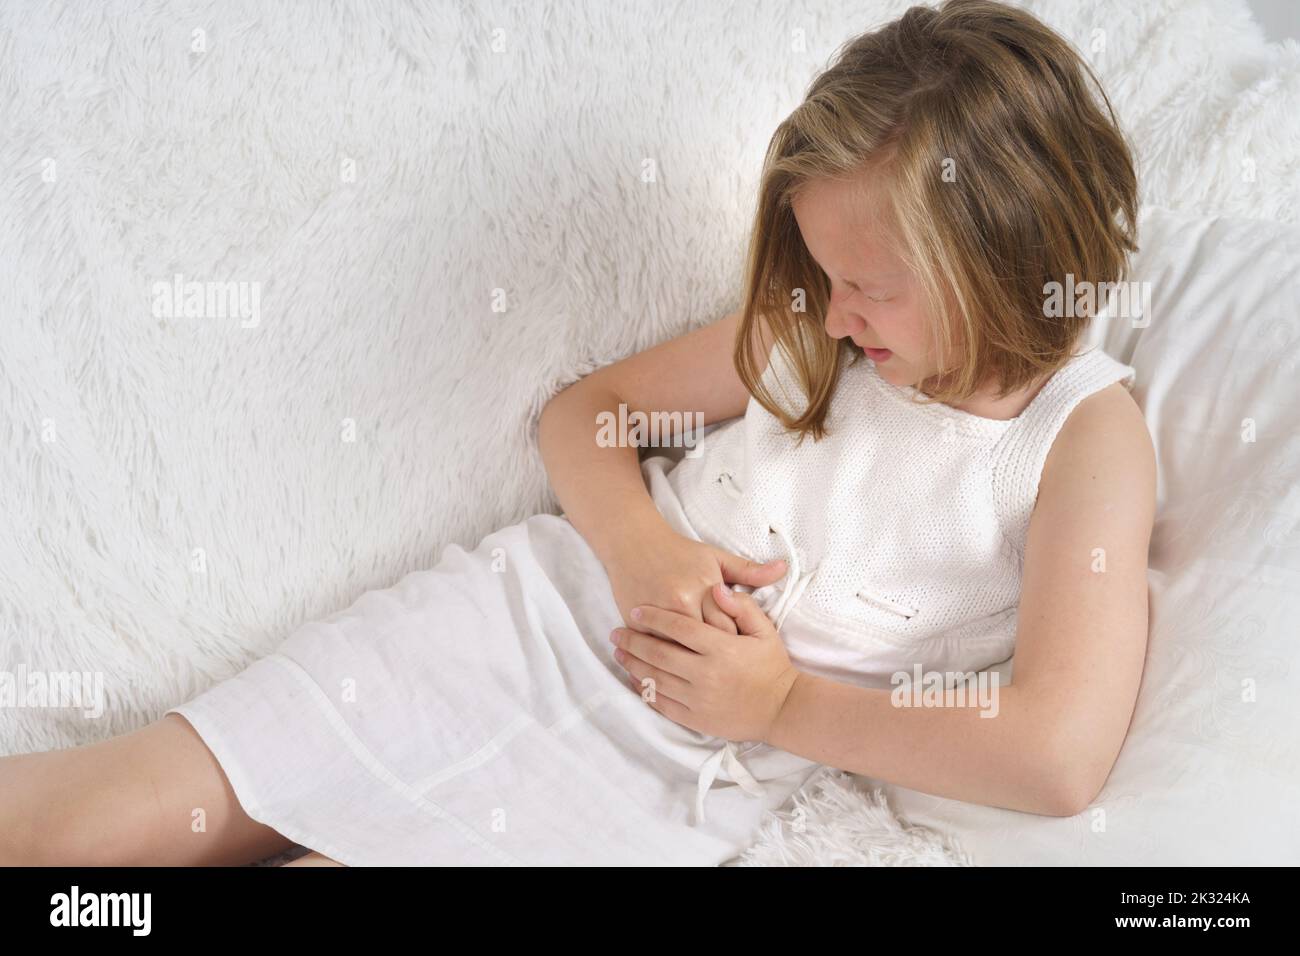 Das Teenager-Mädchen quetscht sich vor Schmerzen die Hände auf den Bauch. Medizinisches Konzept. Stockfoto